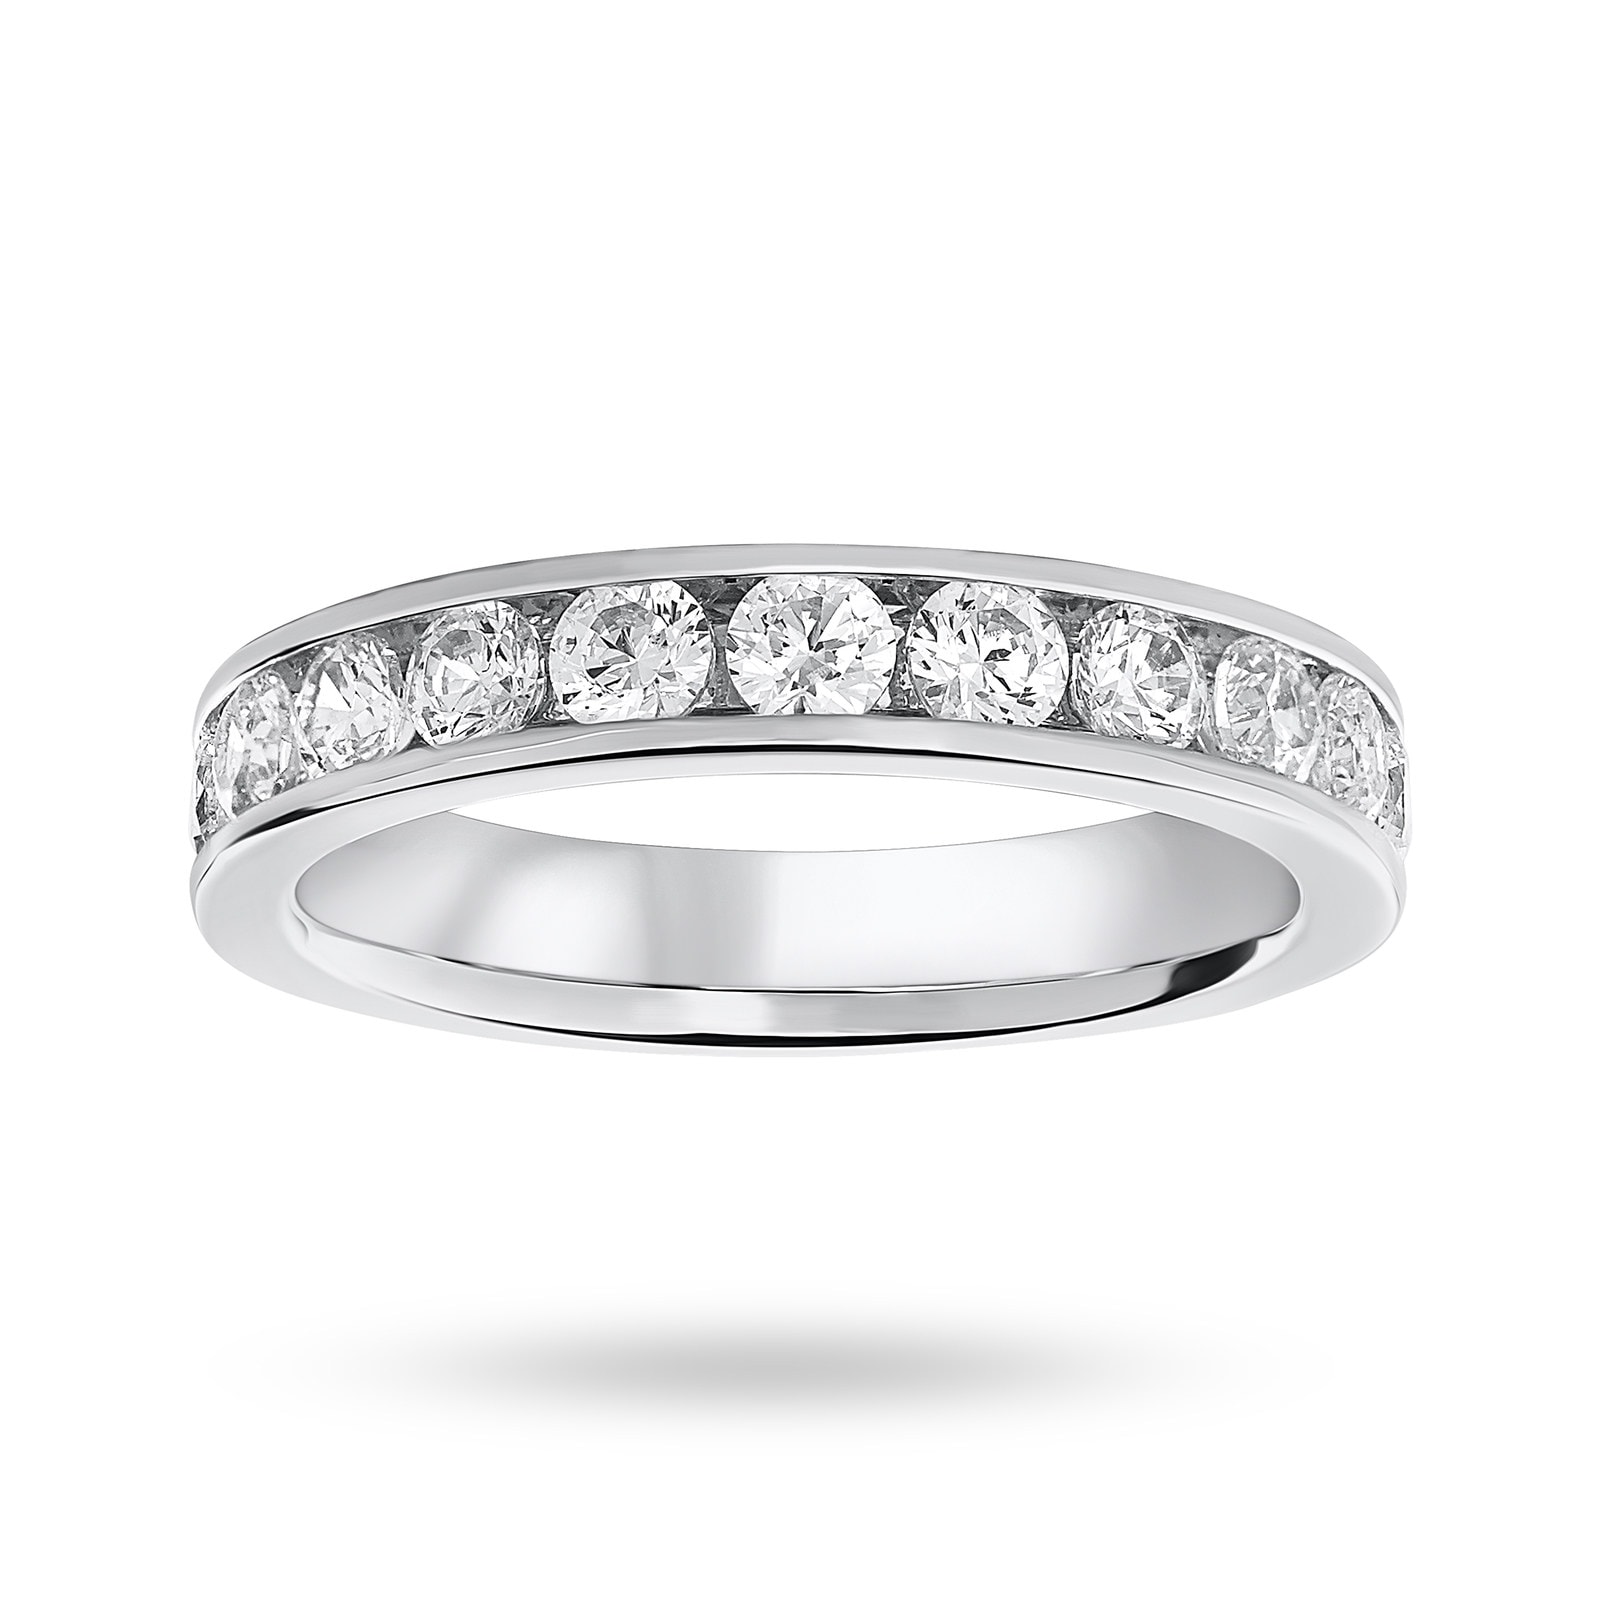 Platinum 1.00 Carat Brilliant Cut Half Eternity Ring - Ring Size J